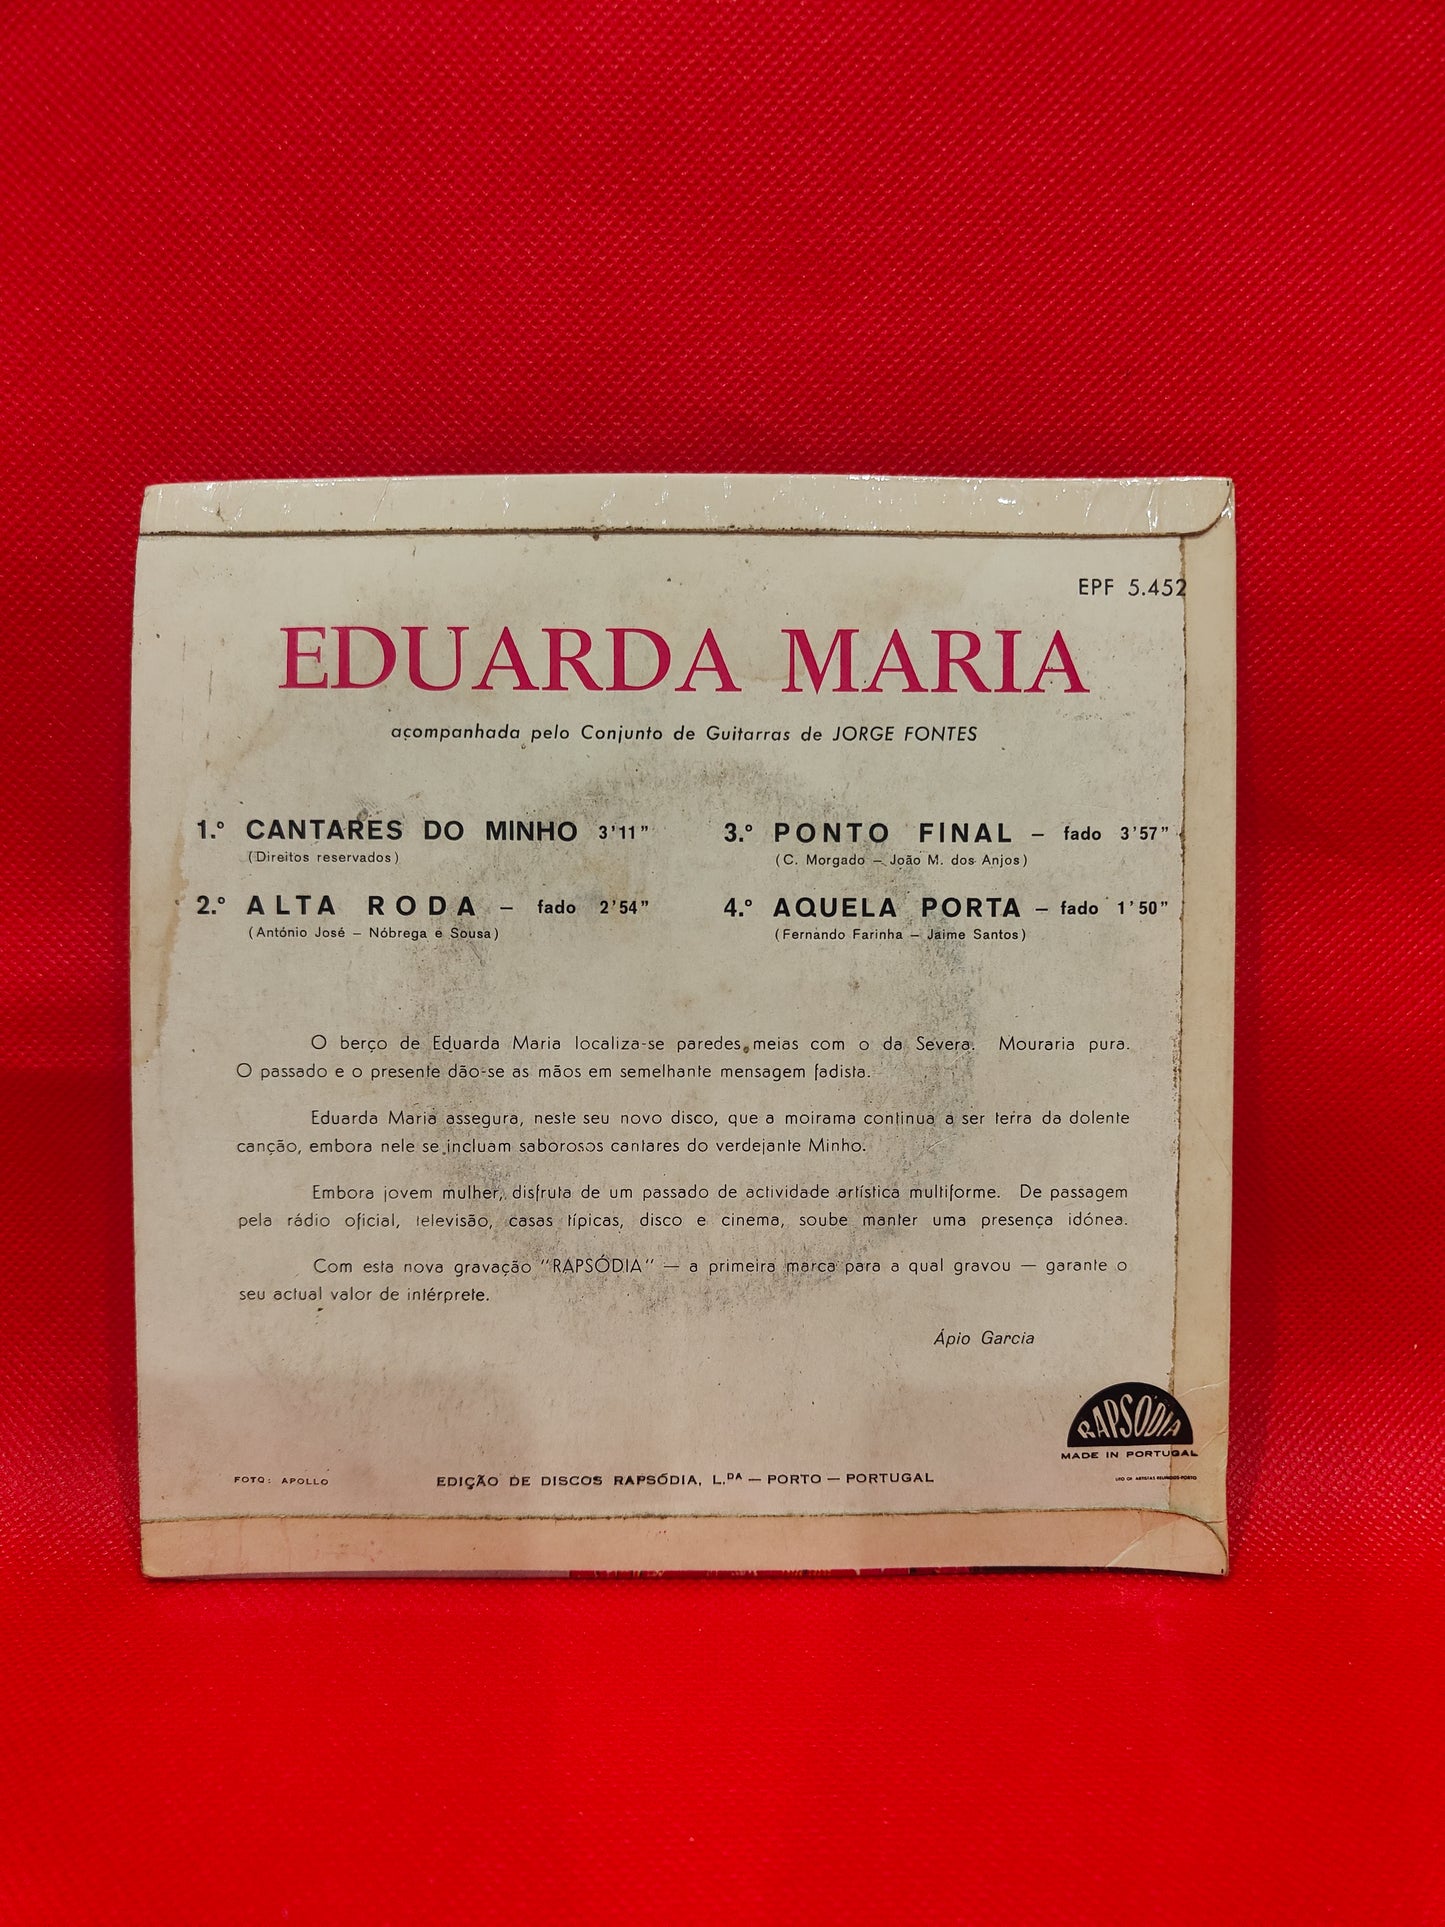 Eduarda Maria - Cantares do minho